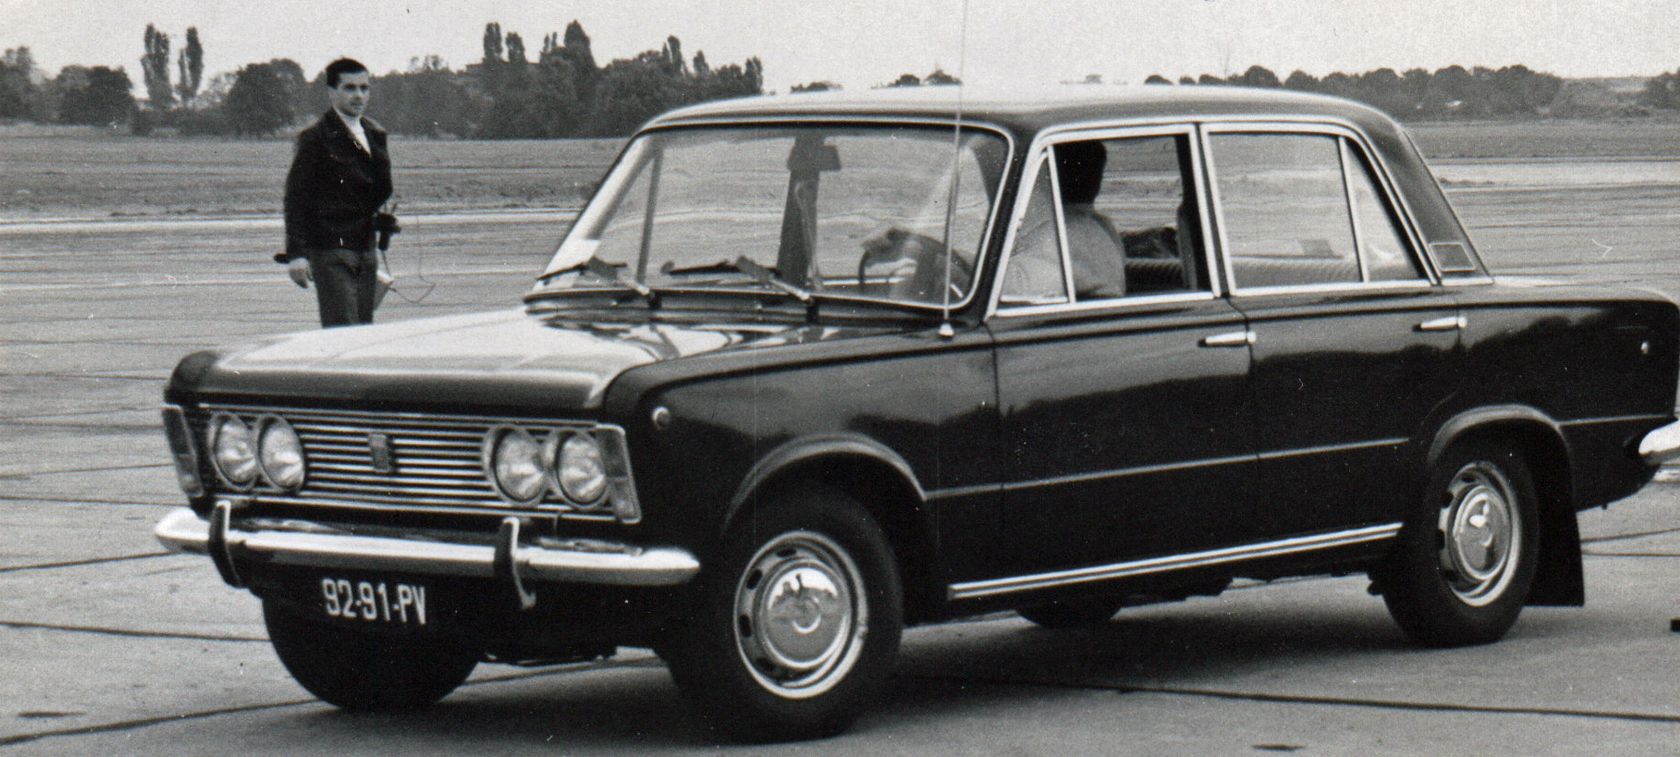 40 lat minęło - pierwszy w Polsce samochód LPG